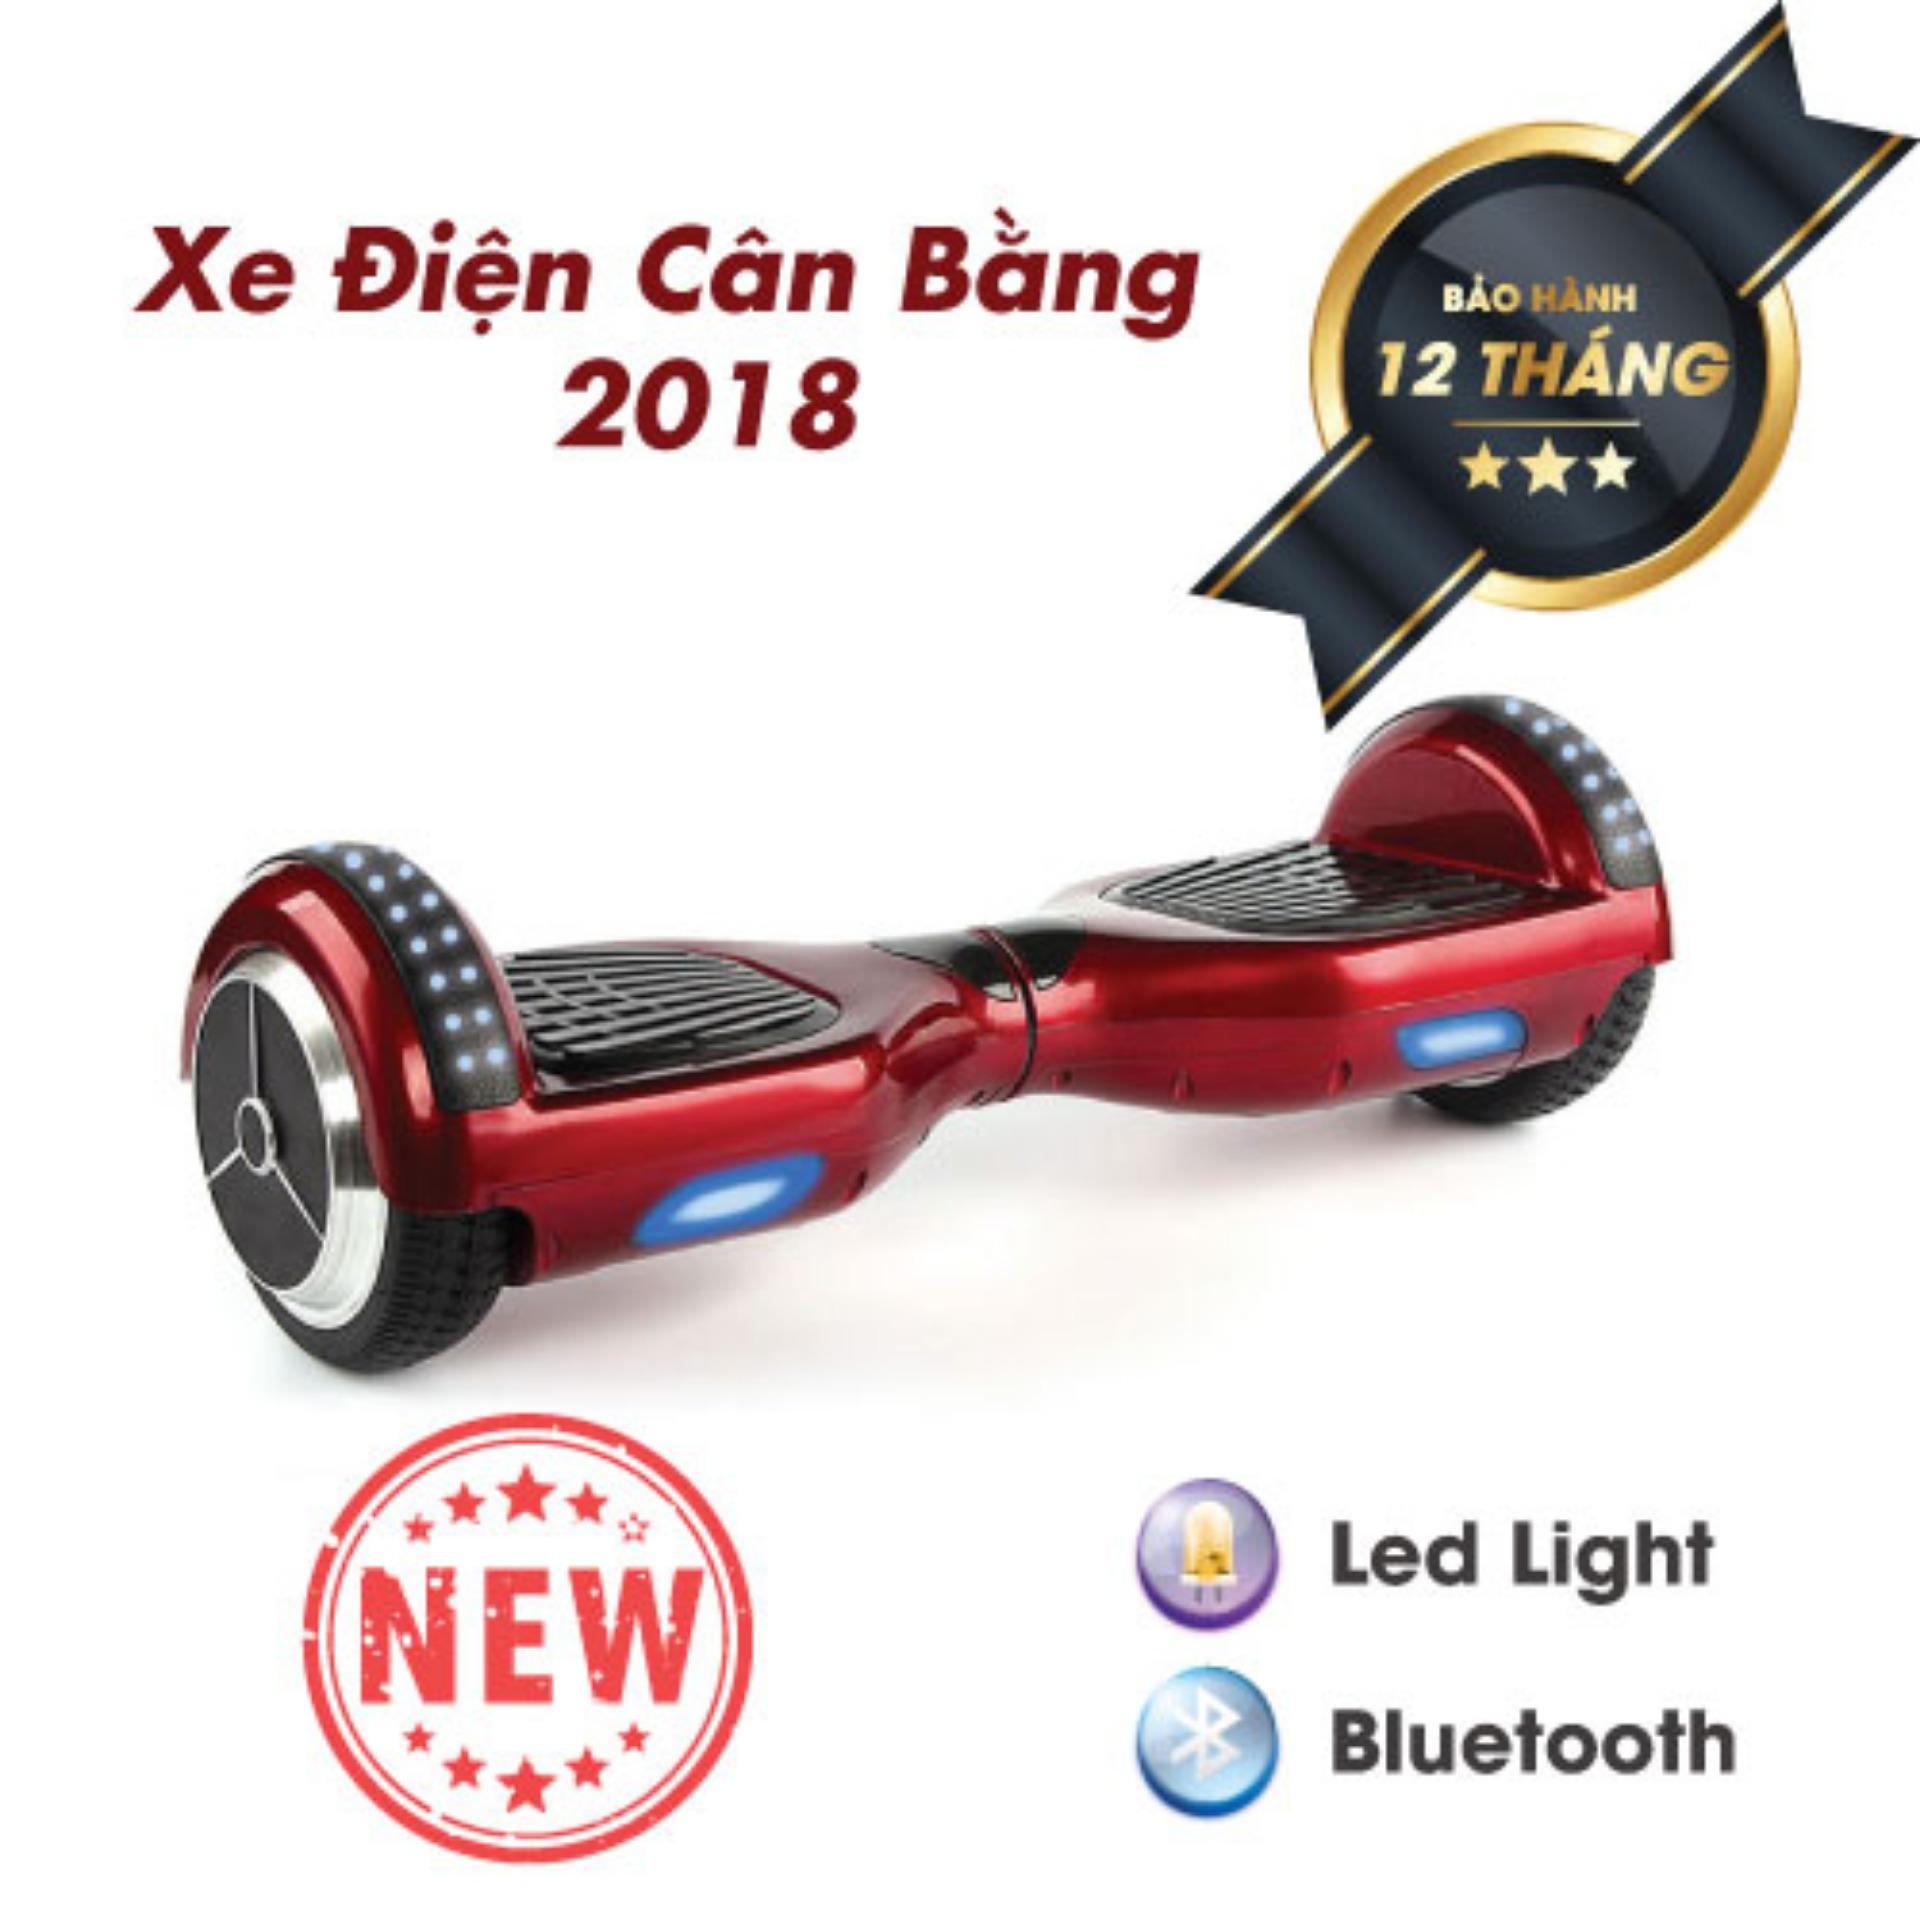 XE ĐIỆN CÂN BẰNG THÔNG MINH - 6.5 INCH BẢN MỚI 2018 Có Bluetooth, đèn led, tay xách thuận tiện